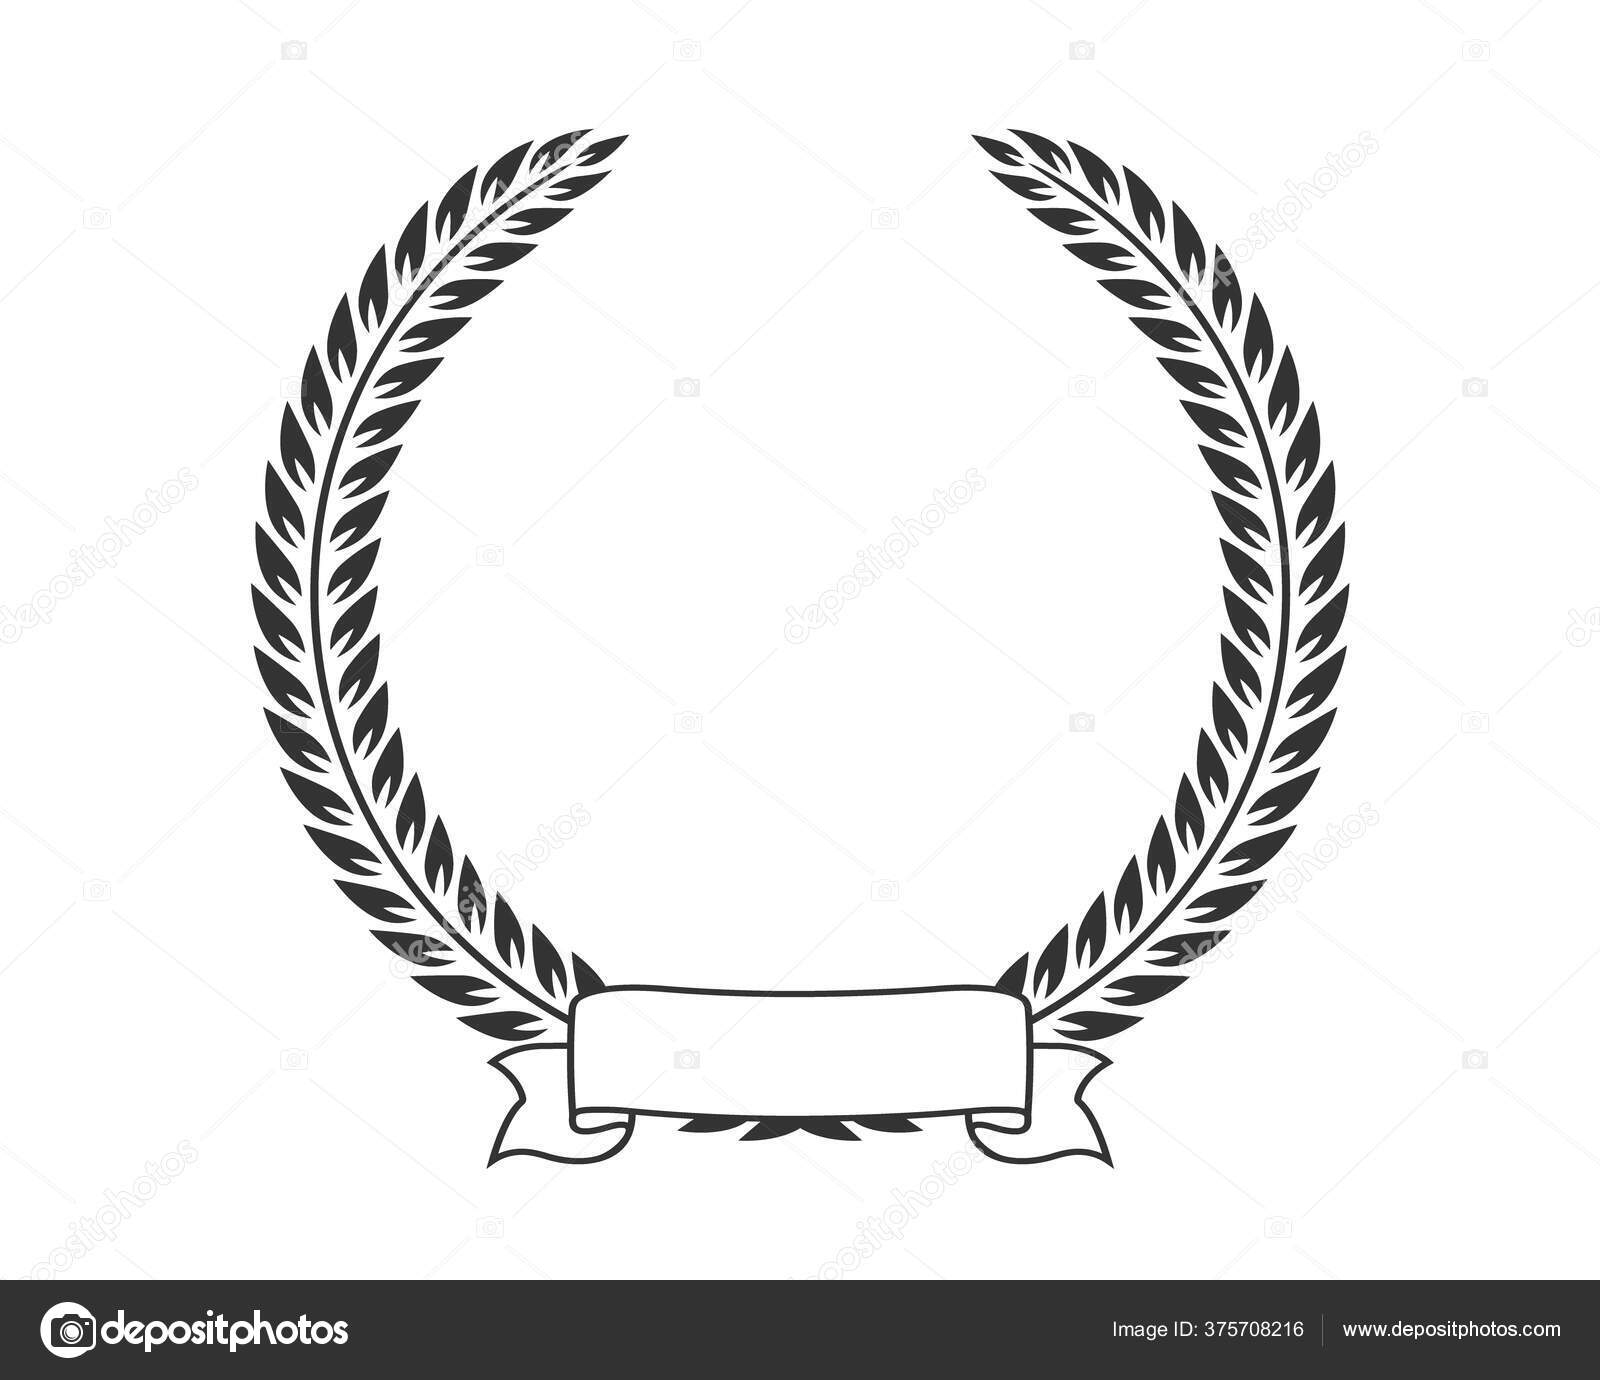 Marco redondo de plata, escudo, escudo de madera redondo libre para tirar  del material, ángulo, plantilla de diseño de logo gratis, fotografía png